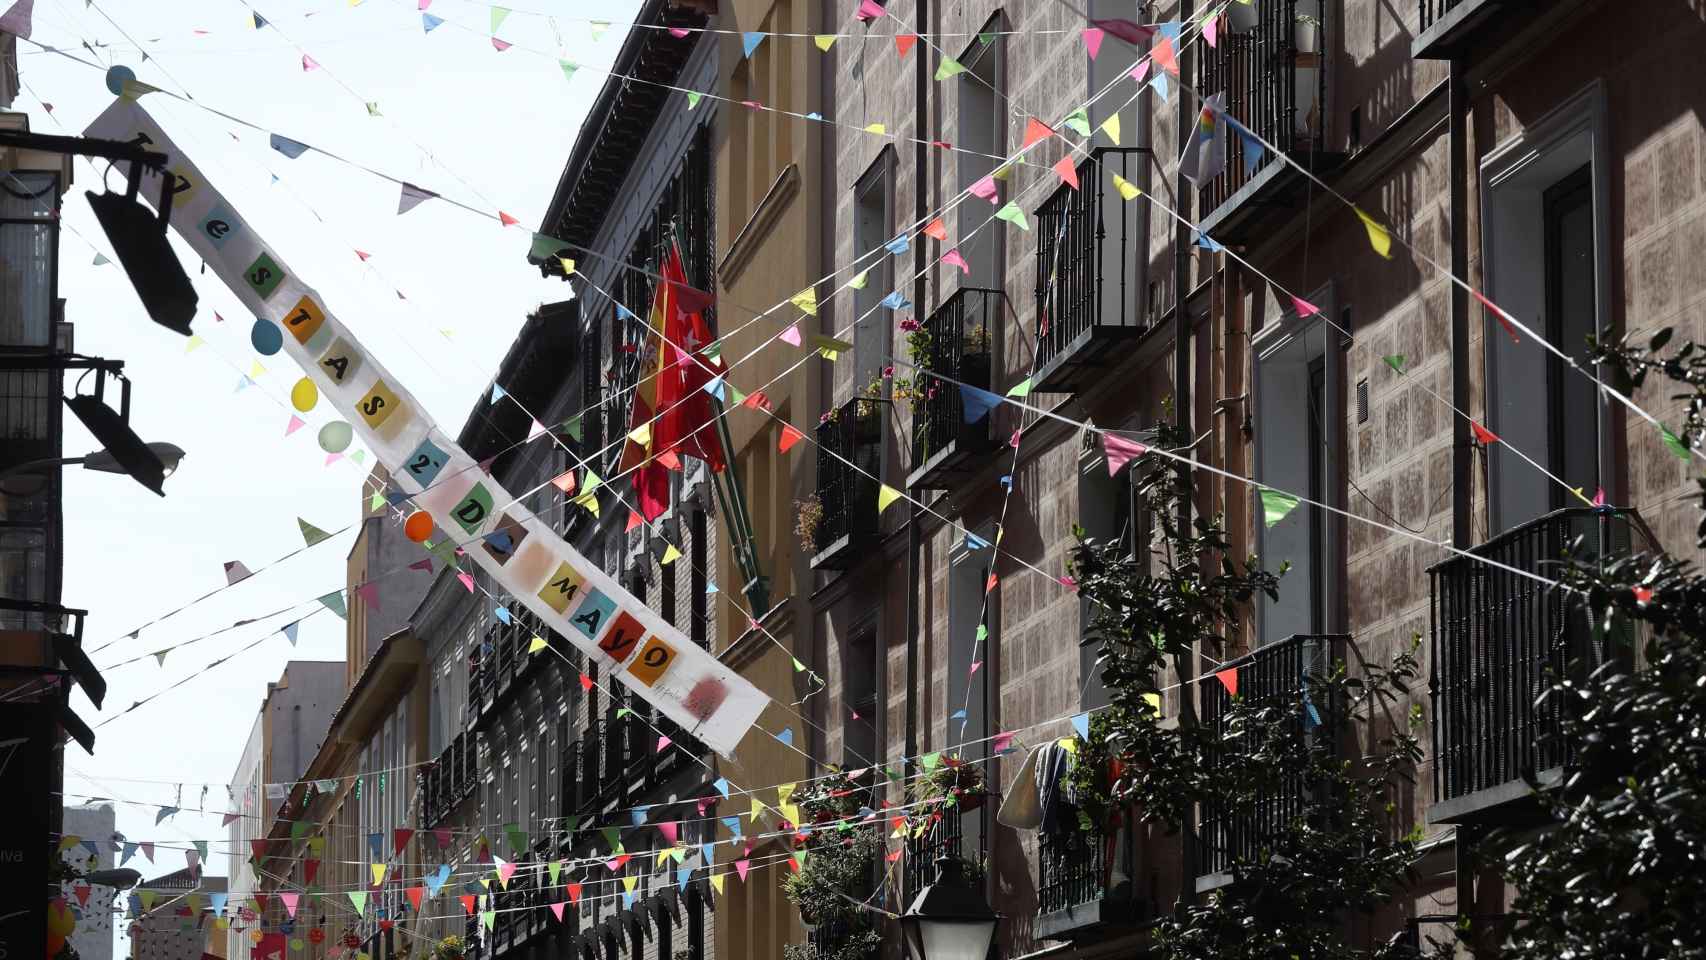 Entorno festivo en el barrio de Malasaña de Madrid.